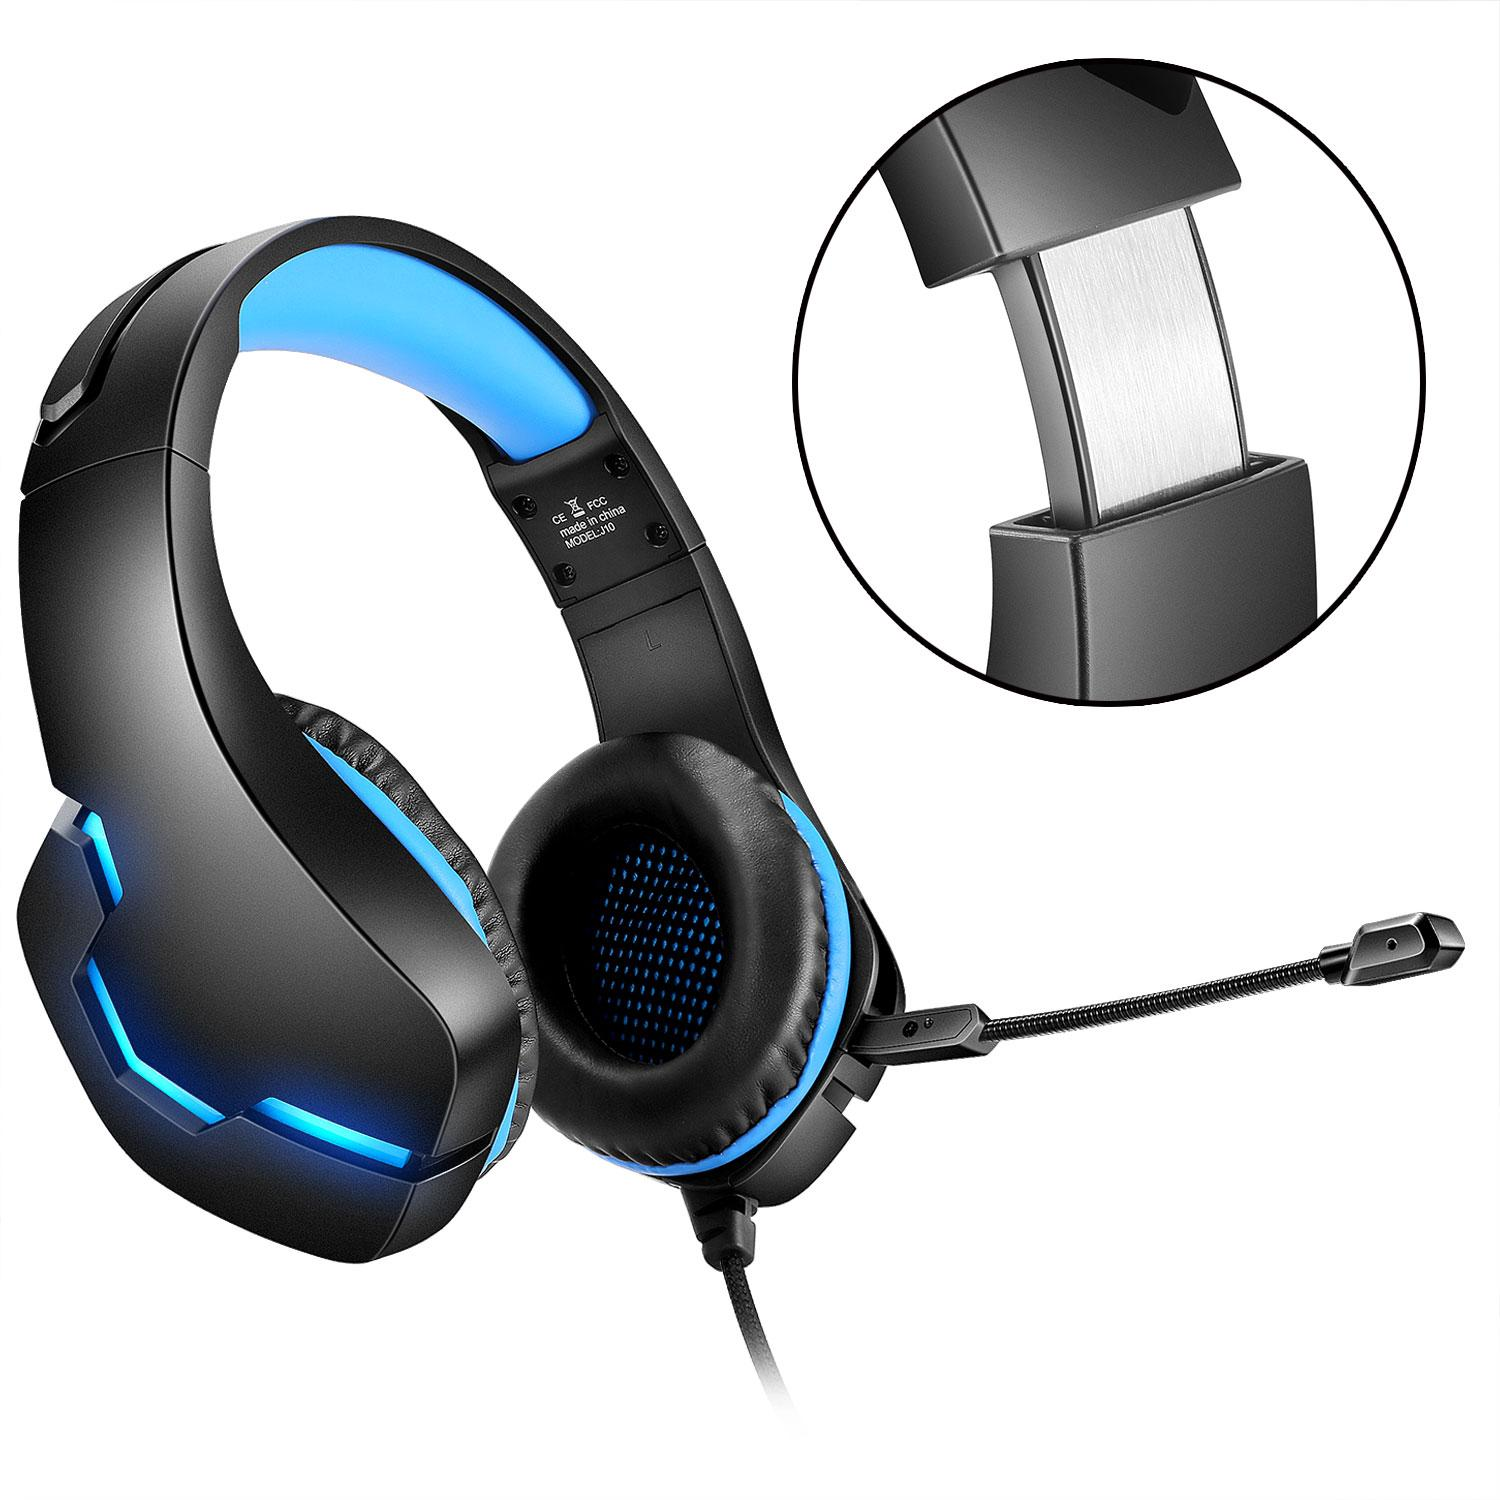 INF Gaming-Headset mit 3,5 mm Over-ear Gaming Schwarz/Blau, - Schwarz/Blau Klinkenstecker Headset